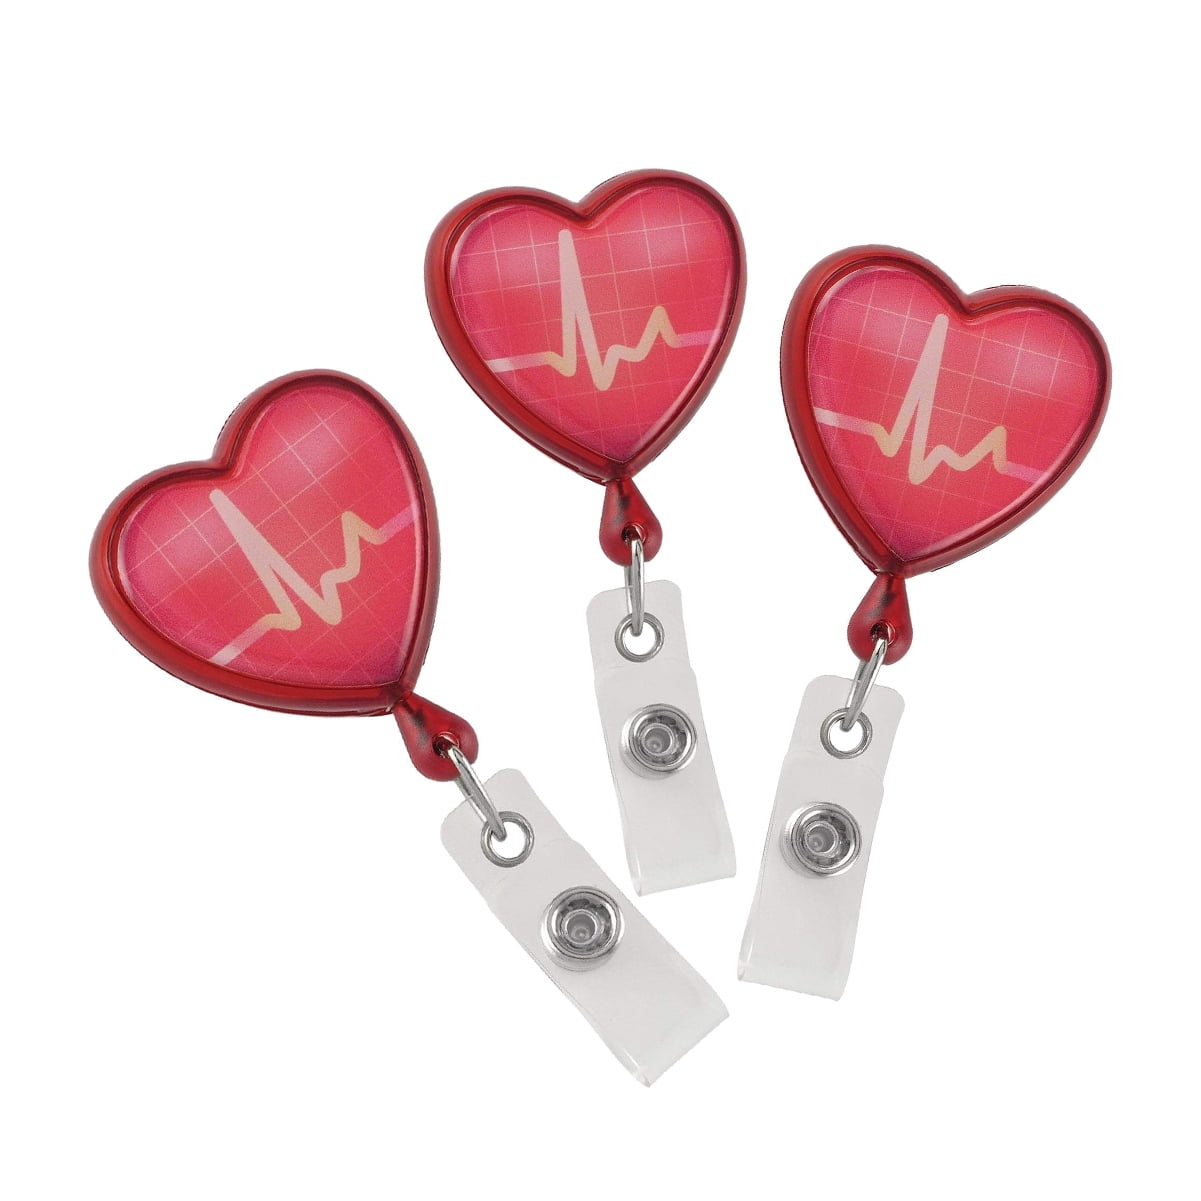 Retractable Badge Holder 3D Soft Rubber EKG Heart Design SmartCharms 